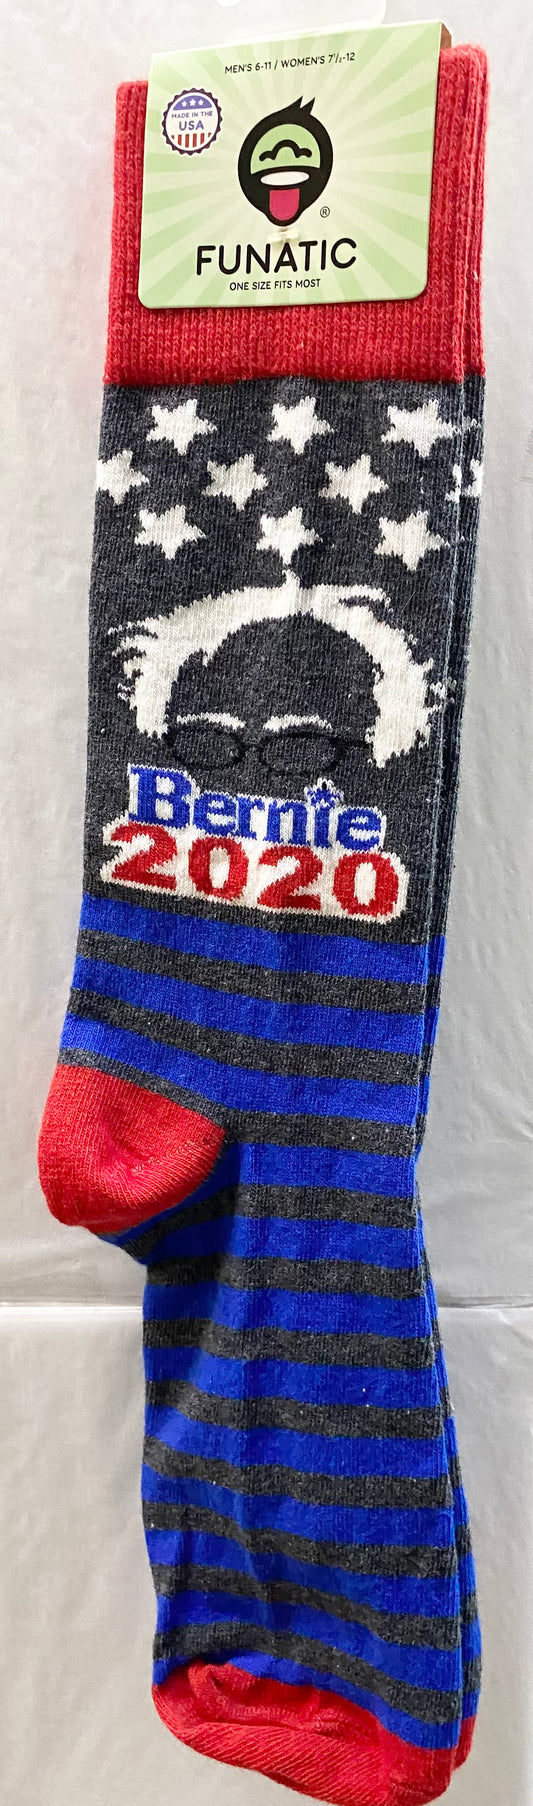 Bernie 2020 Socks